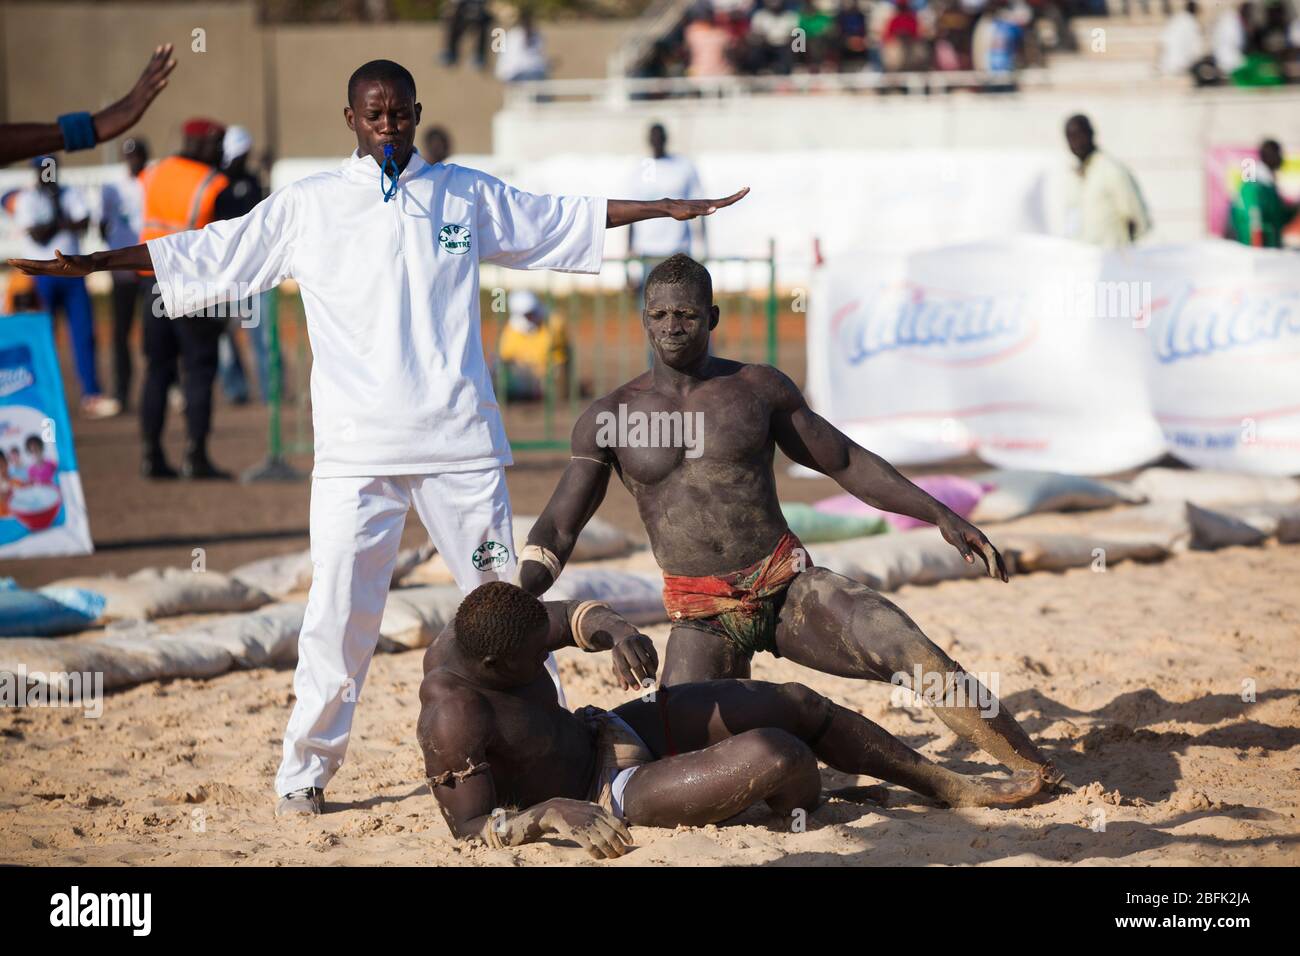 Le moment décisif de la victoire et de la défaite lors d'un match de lutte à Dakar, Sénégal. Banque D'Images